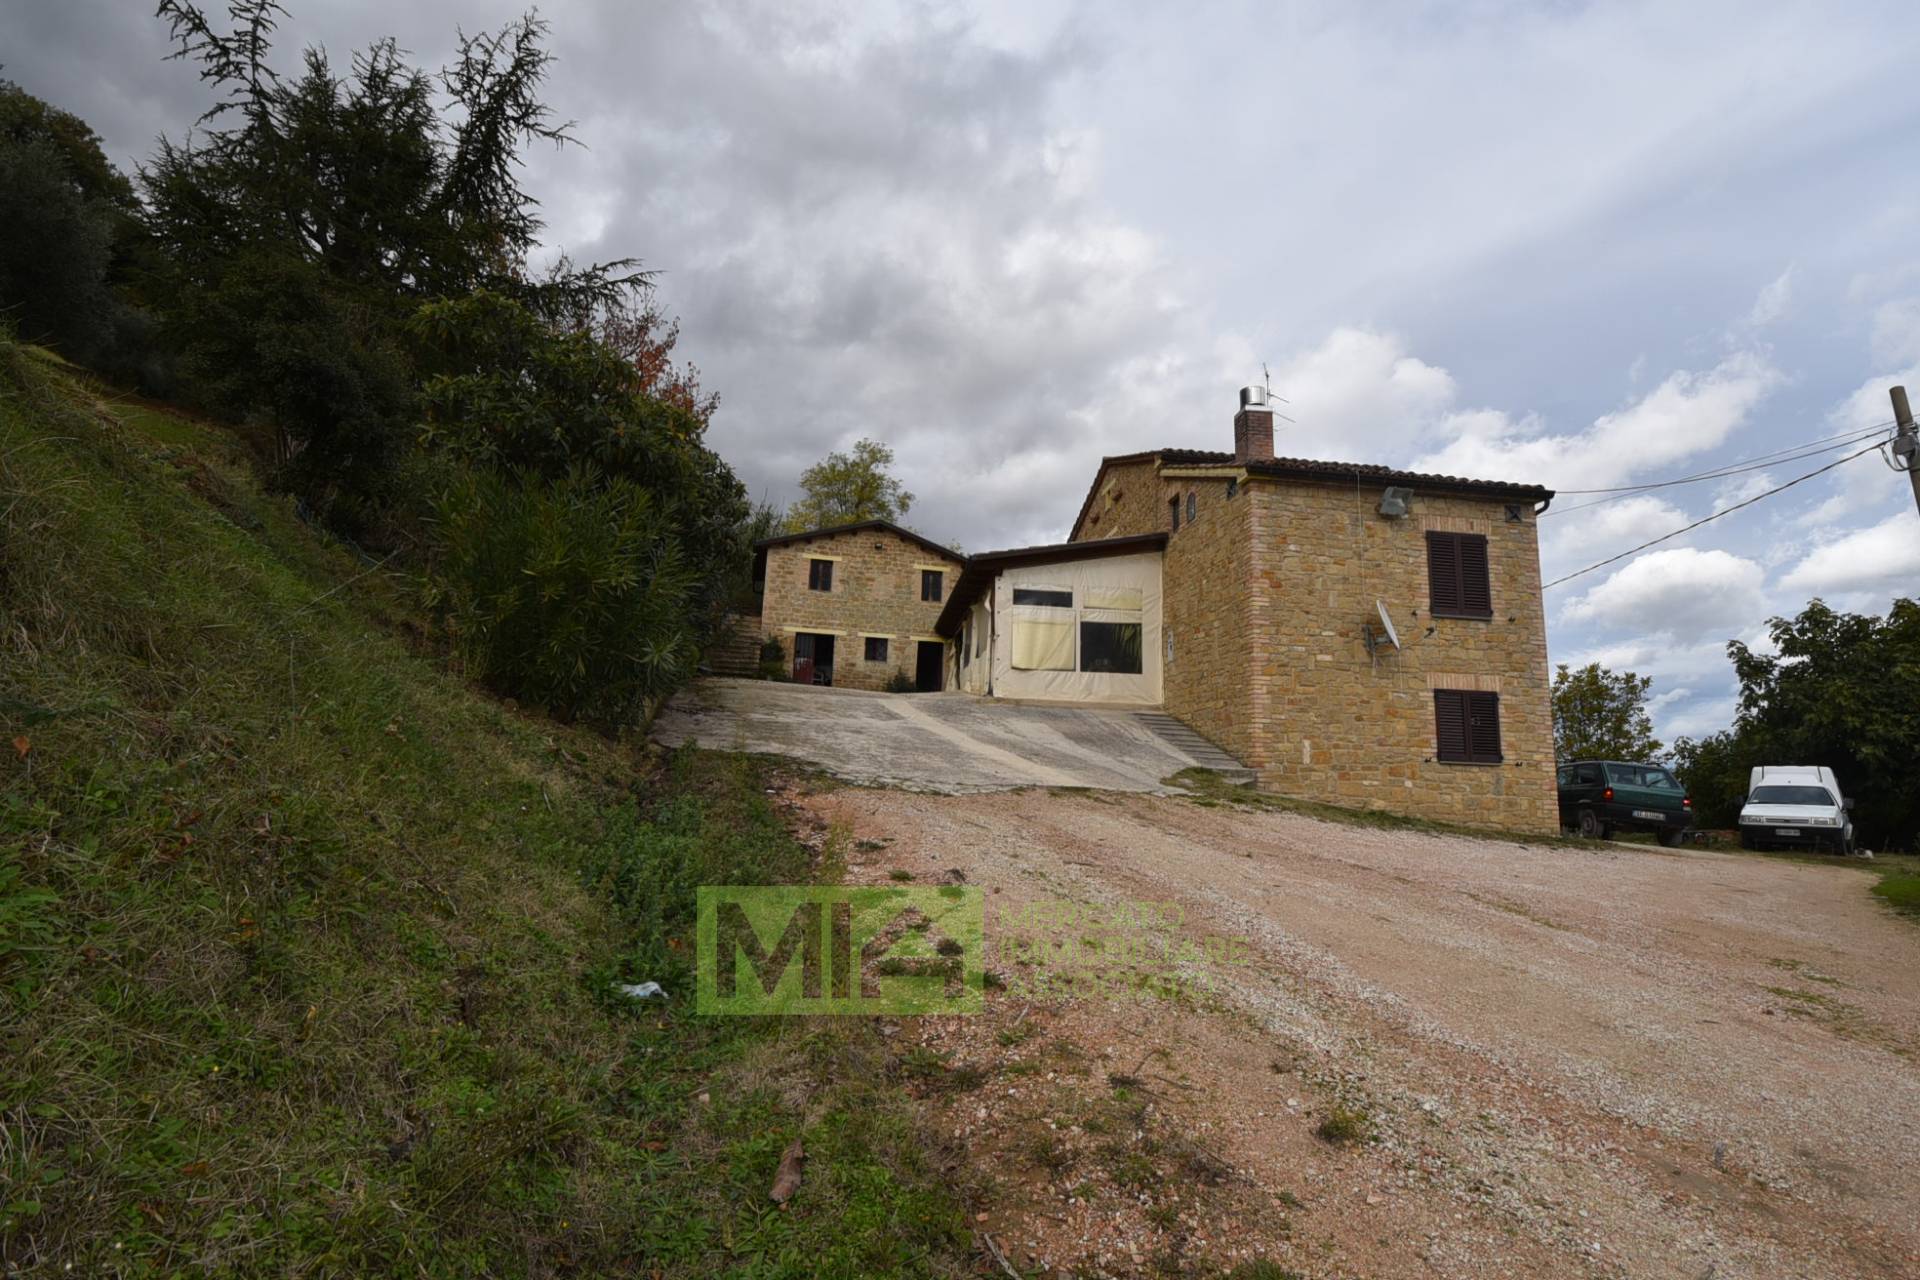 Rustico / Casale in vendita a Penna San Giovanni, 7 locali, zona Località: CAMPAGNA, prezzo € 350.000 | PortaleAgenzieImmobiliari.it